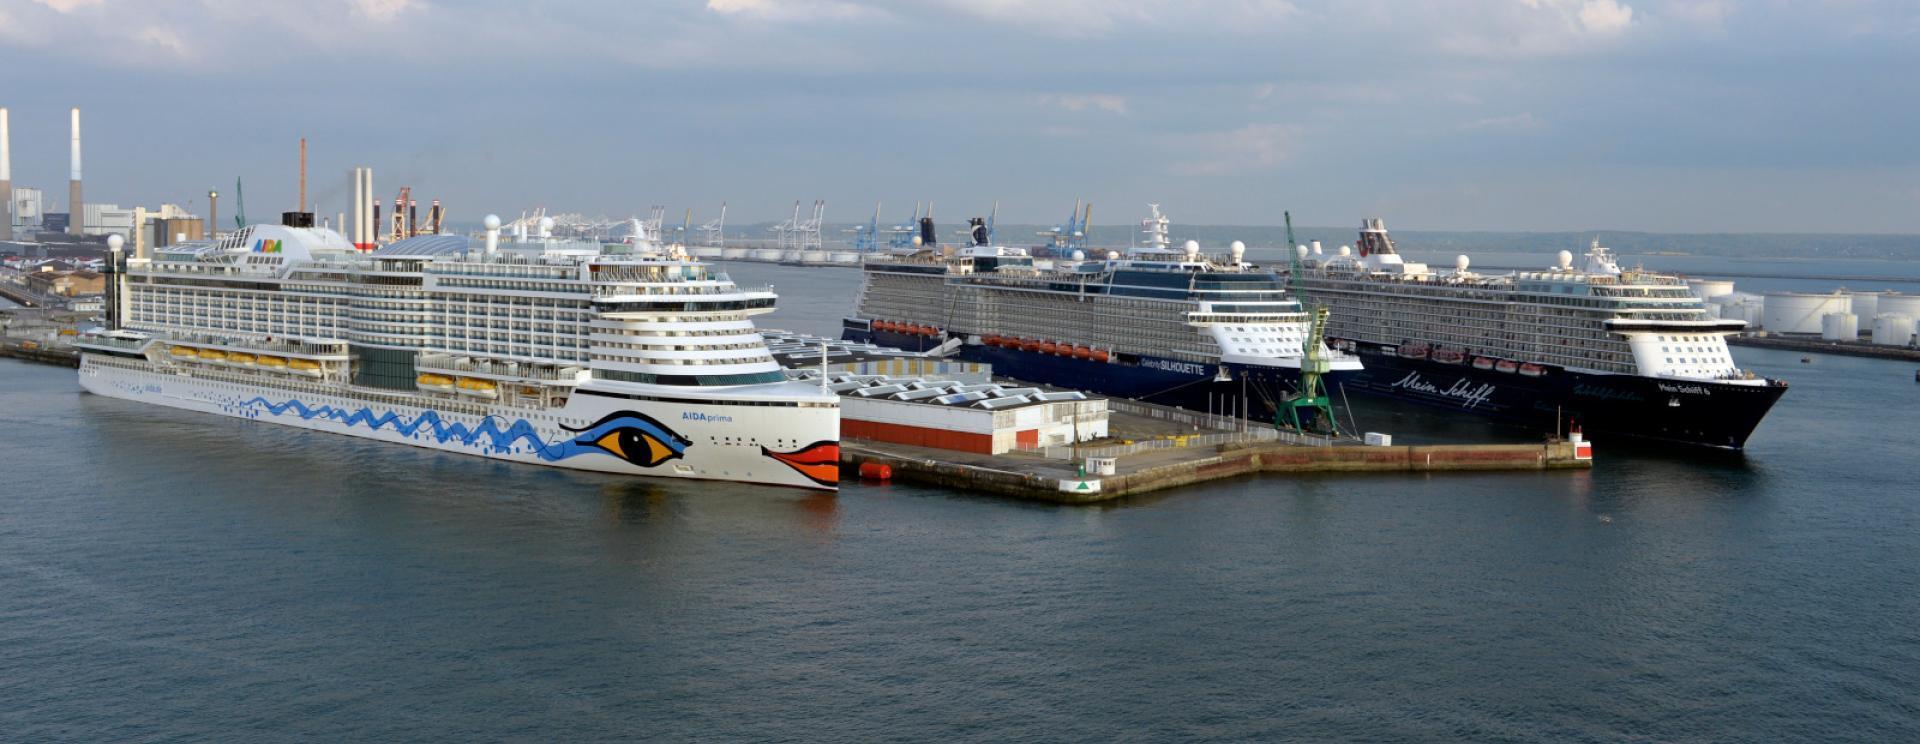 Triple escale de paquebots au Terminal Croisière du Havre avec, en présence : L'Aidaprima, le Celebrity Silhouette et le Meinschiff 6.